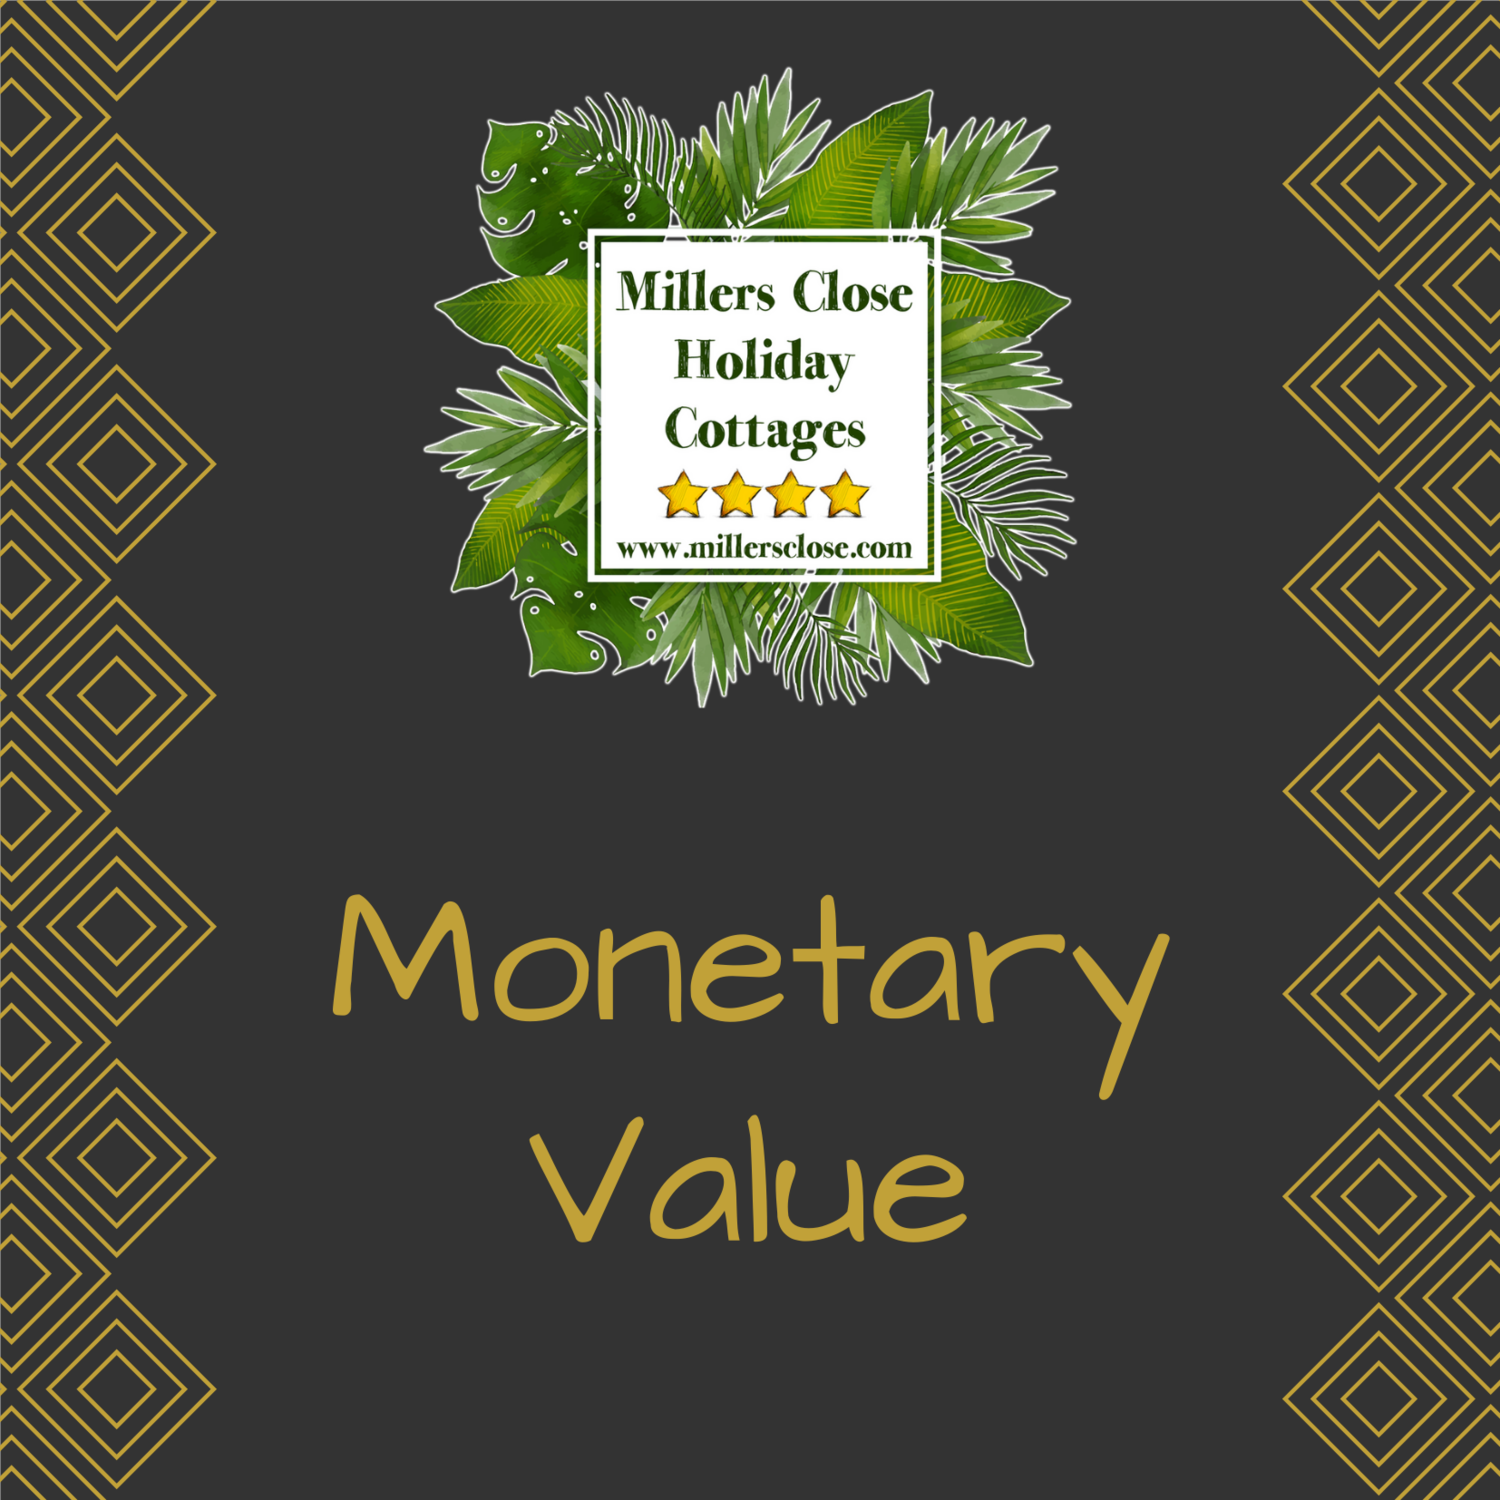 Monetary Value Voucher